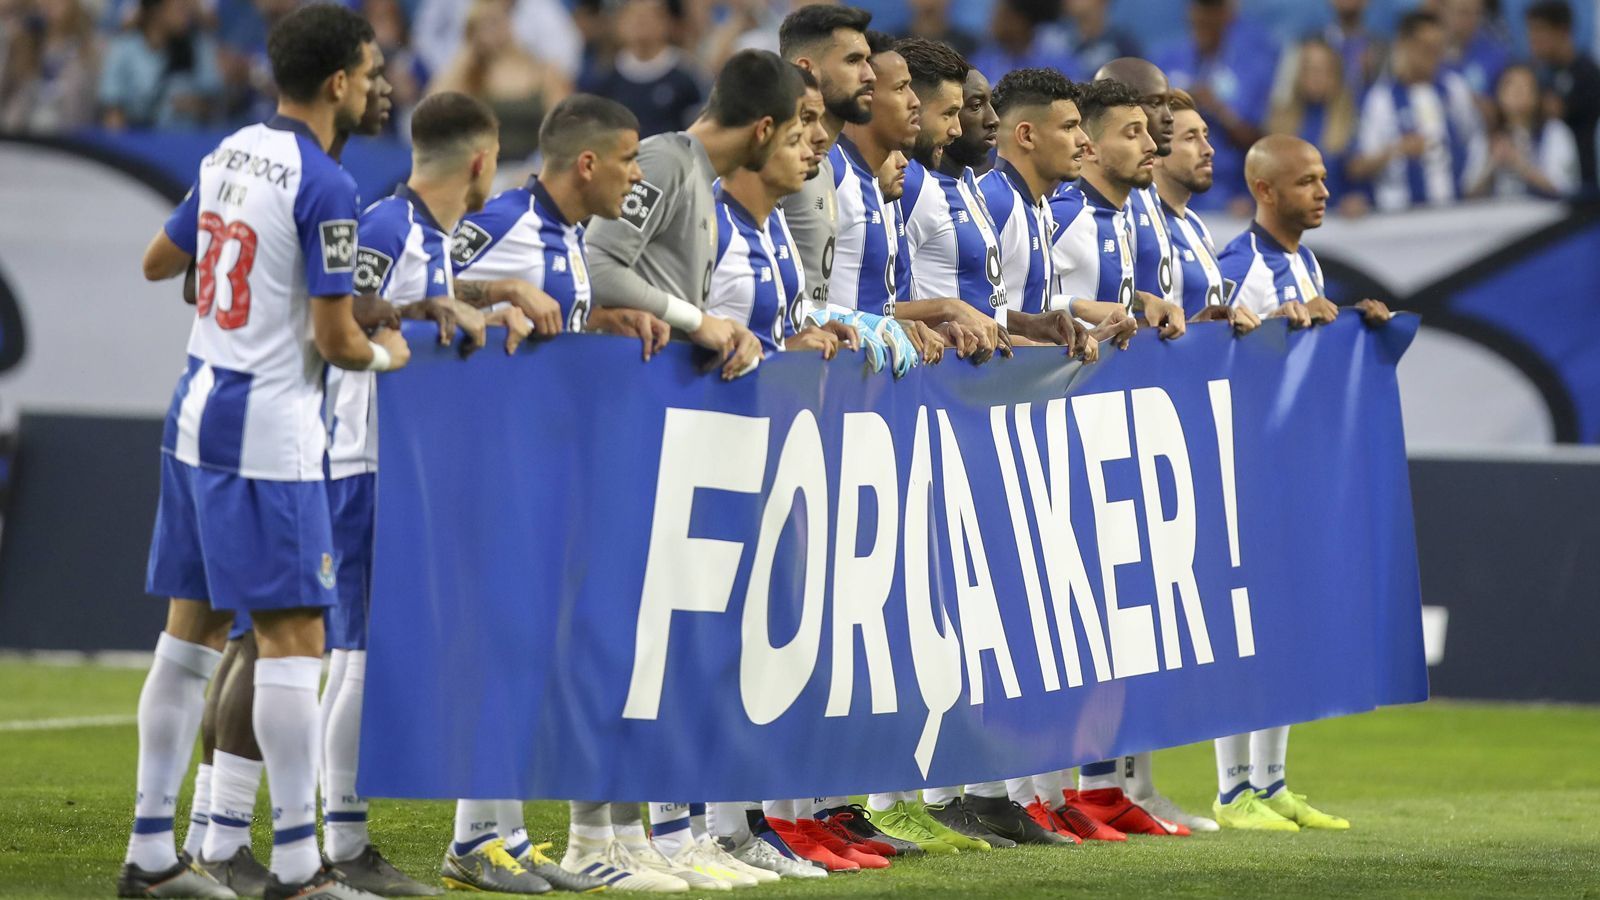 
                <strong>Nach Herzinfarkt: Porto solidarisiert sich mit Keeper Iker Casillas</strong><br>
                Das Heimspiel des FC Porto gegen Aves wurde zur großen Solidaritätskundgebung für Torhüter Iker Casillas. Der spanische Welt- und Europameister erlitt zuletzt im Training der Portugiesen einen Herzinfarkt, ist aber mittlerweile auf dem Wege der Besserung. ran.de zeigt, wie der Routinier von Fans und Spielern unter dem Motto "Forca Iker" ("Stärke Iker") in Porto gefeiert wurde.
              